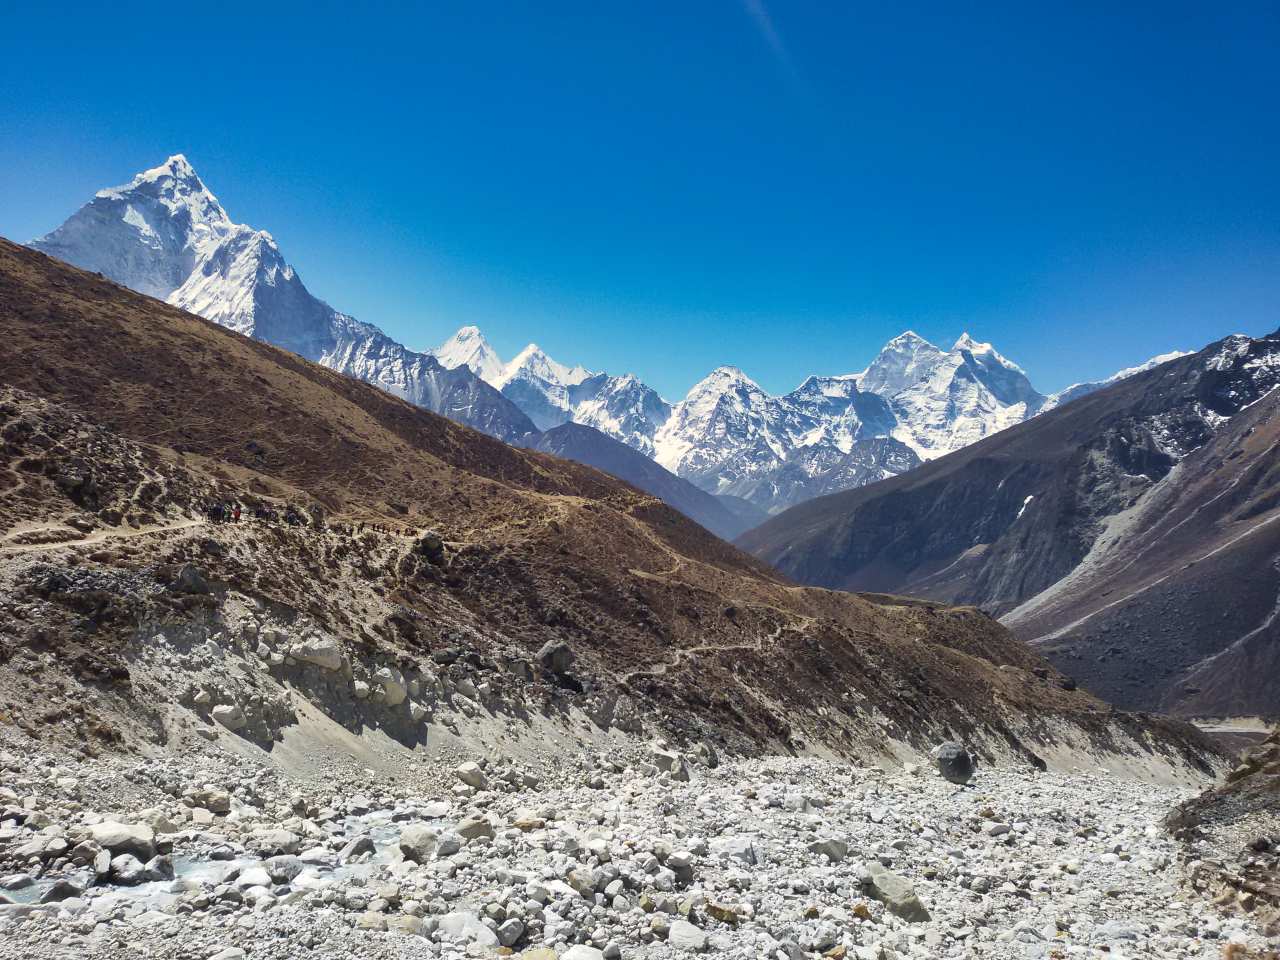 Everest base camp trek in September